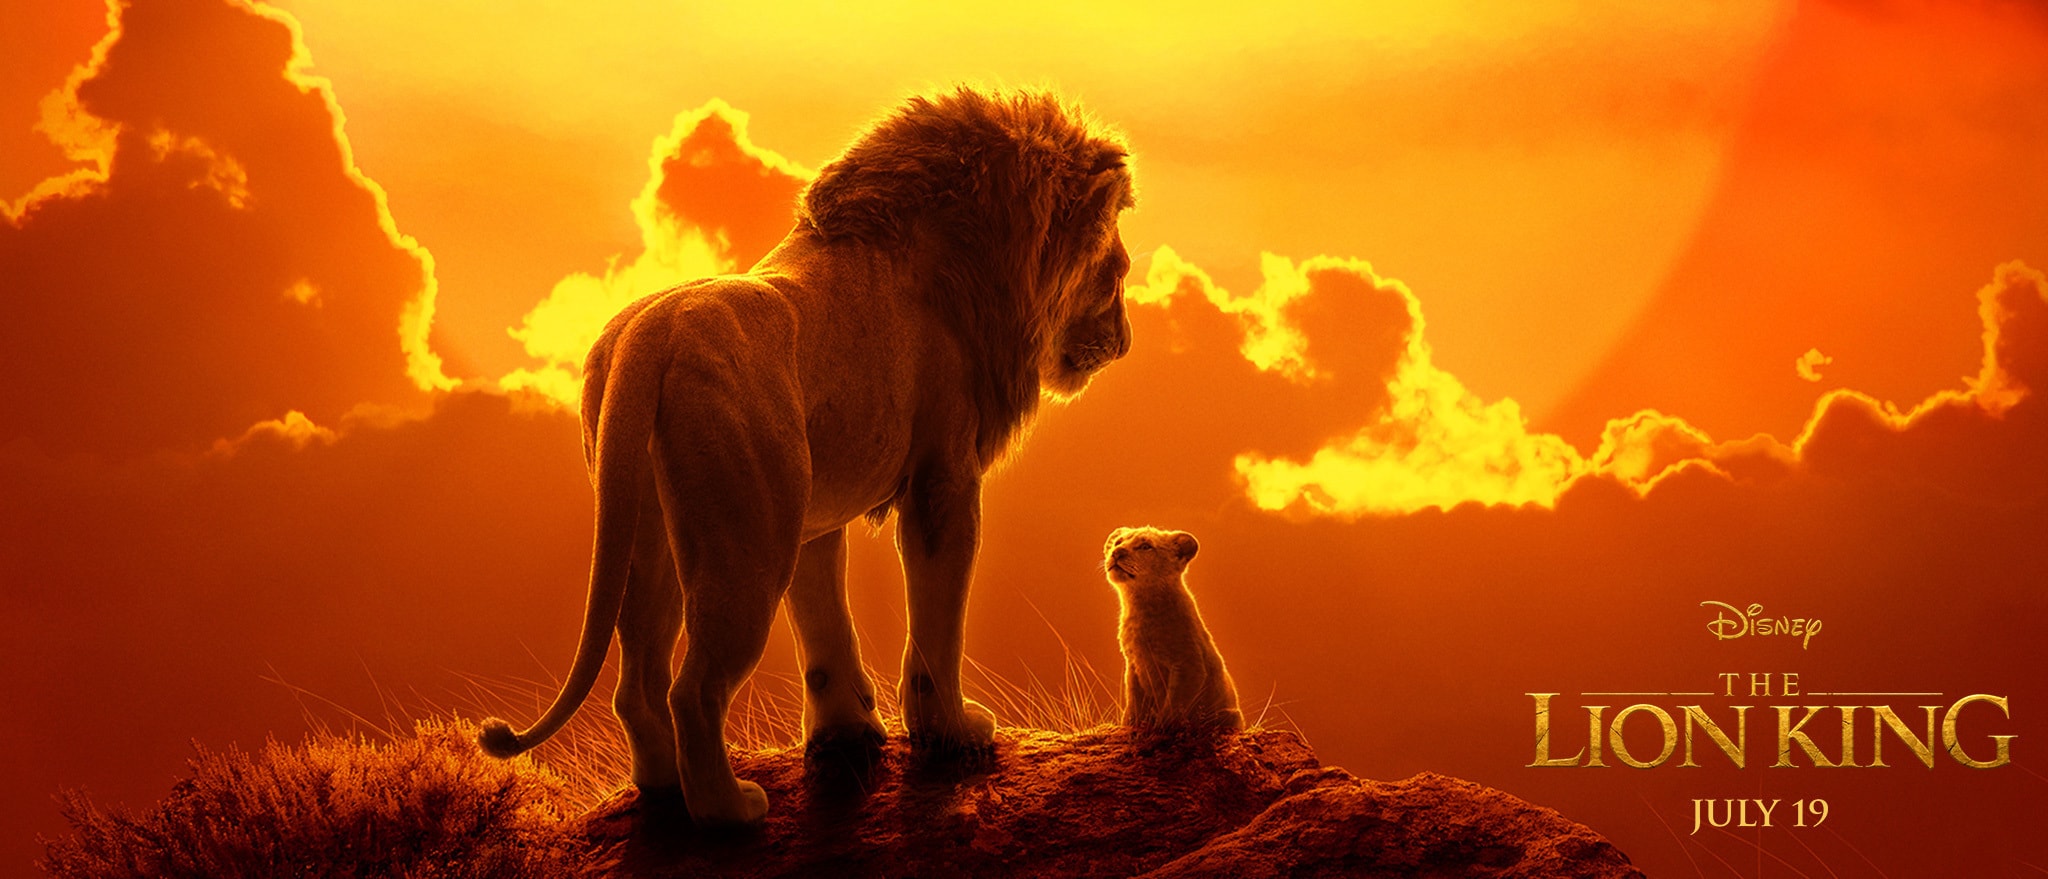 В Сети опубликованы новые промо-фото «Короля Льва»
 